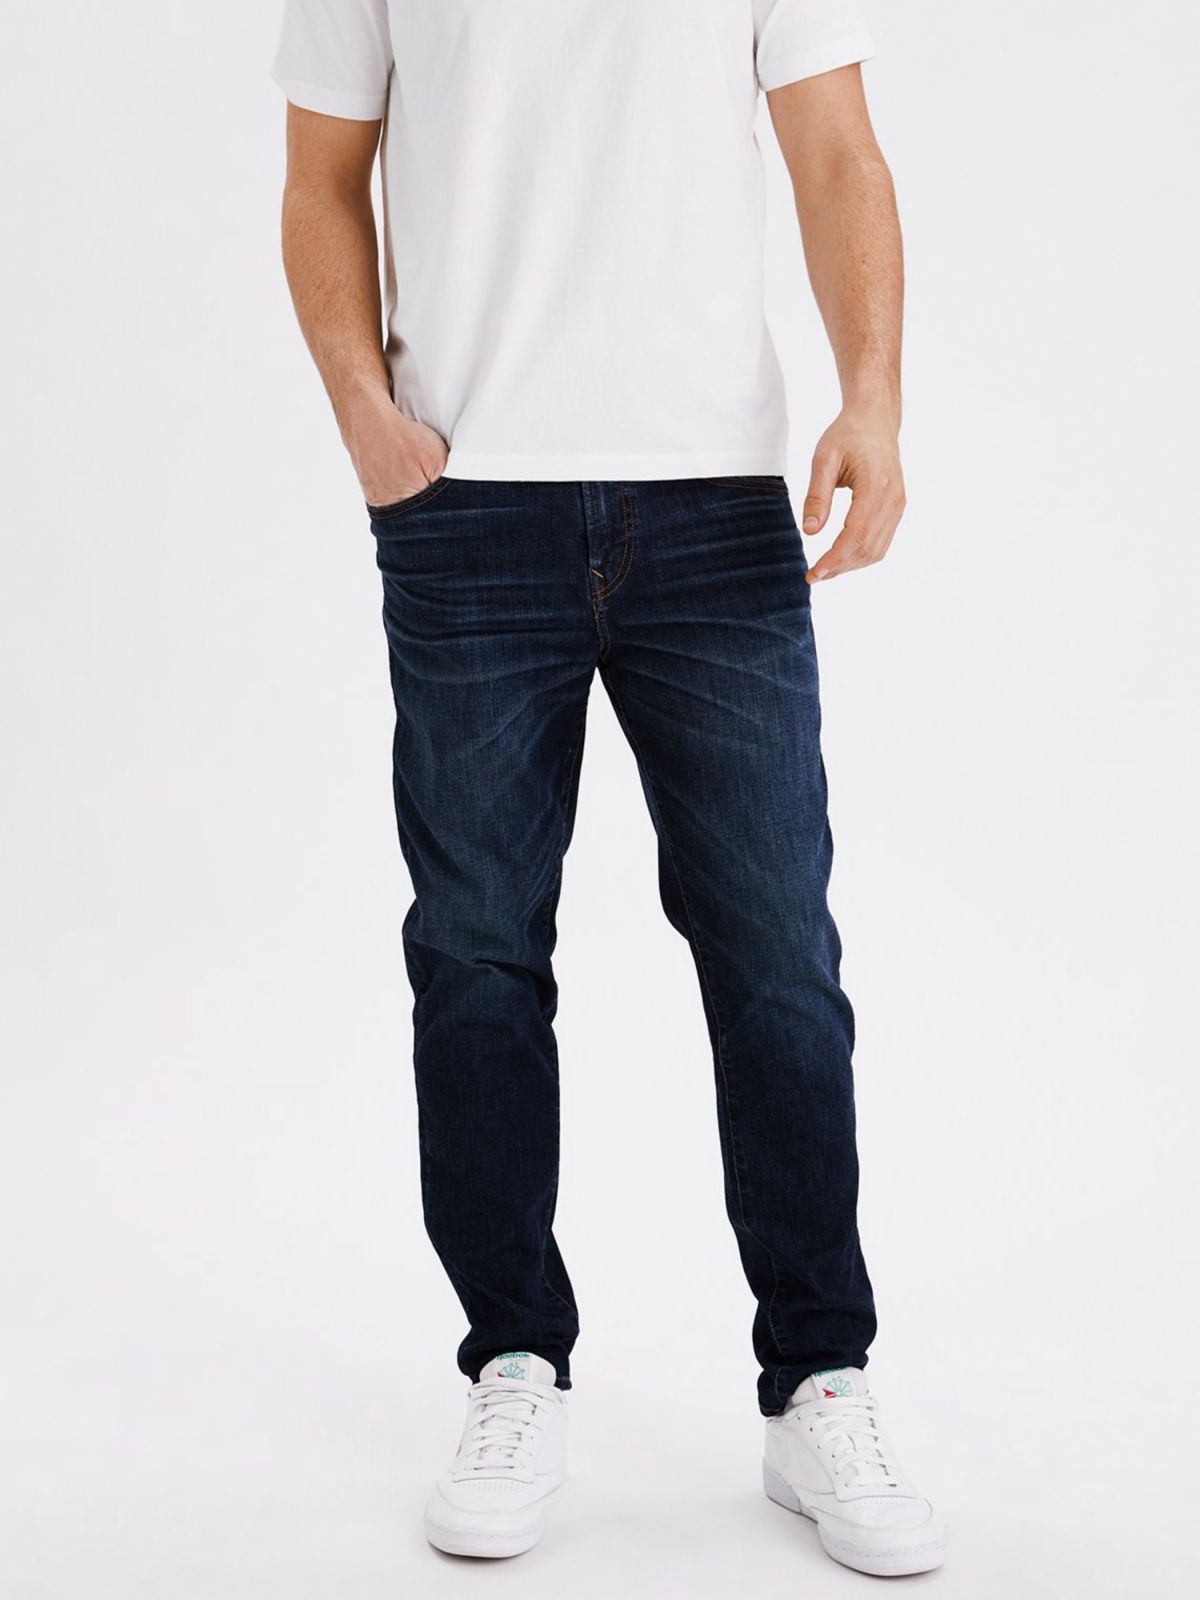  ג'ינס בשטיפה כהה Airflex Ateletic של AMERICAN EAGLE